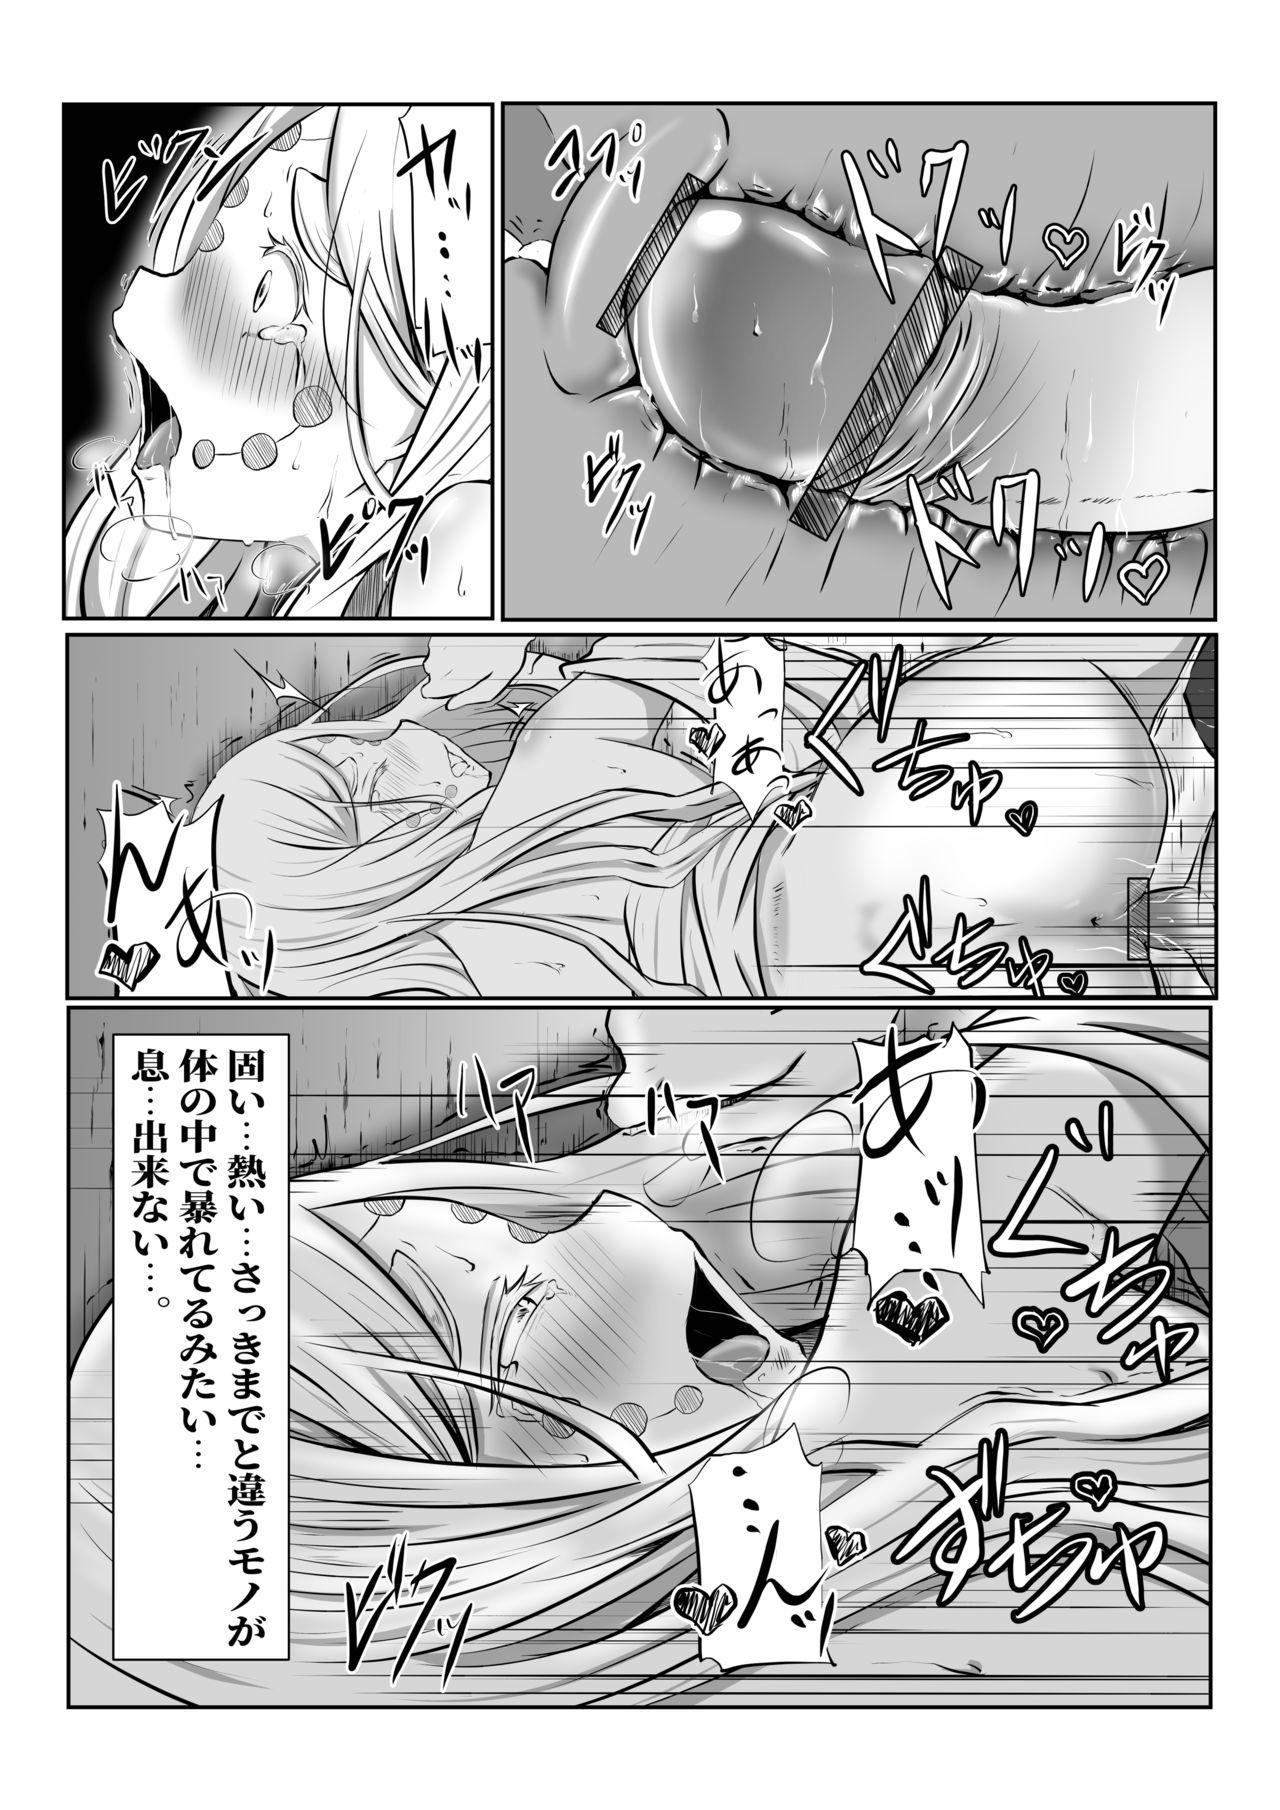 Ass Fuck Hinokami Sex. - Kimetsu no yaiba | demon slayer Girlnextdoor - Page 26